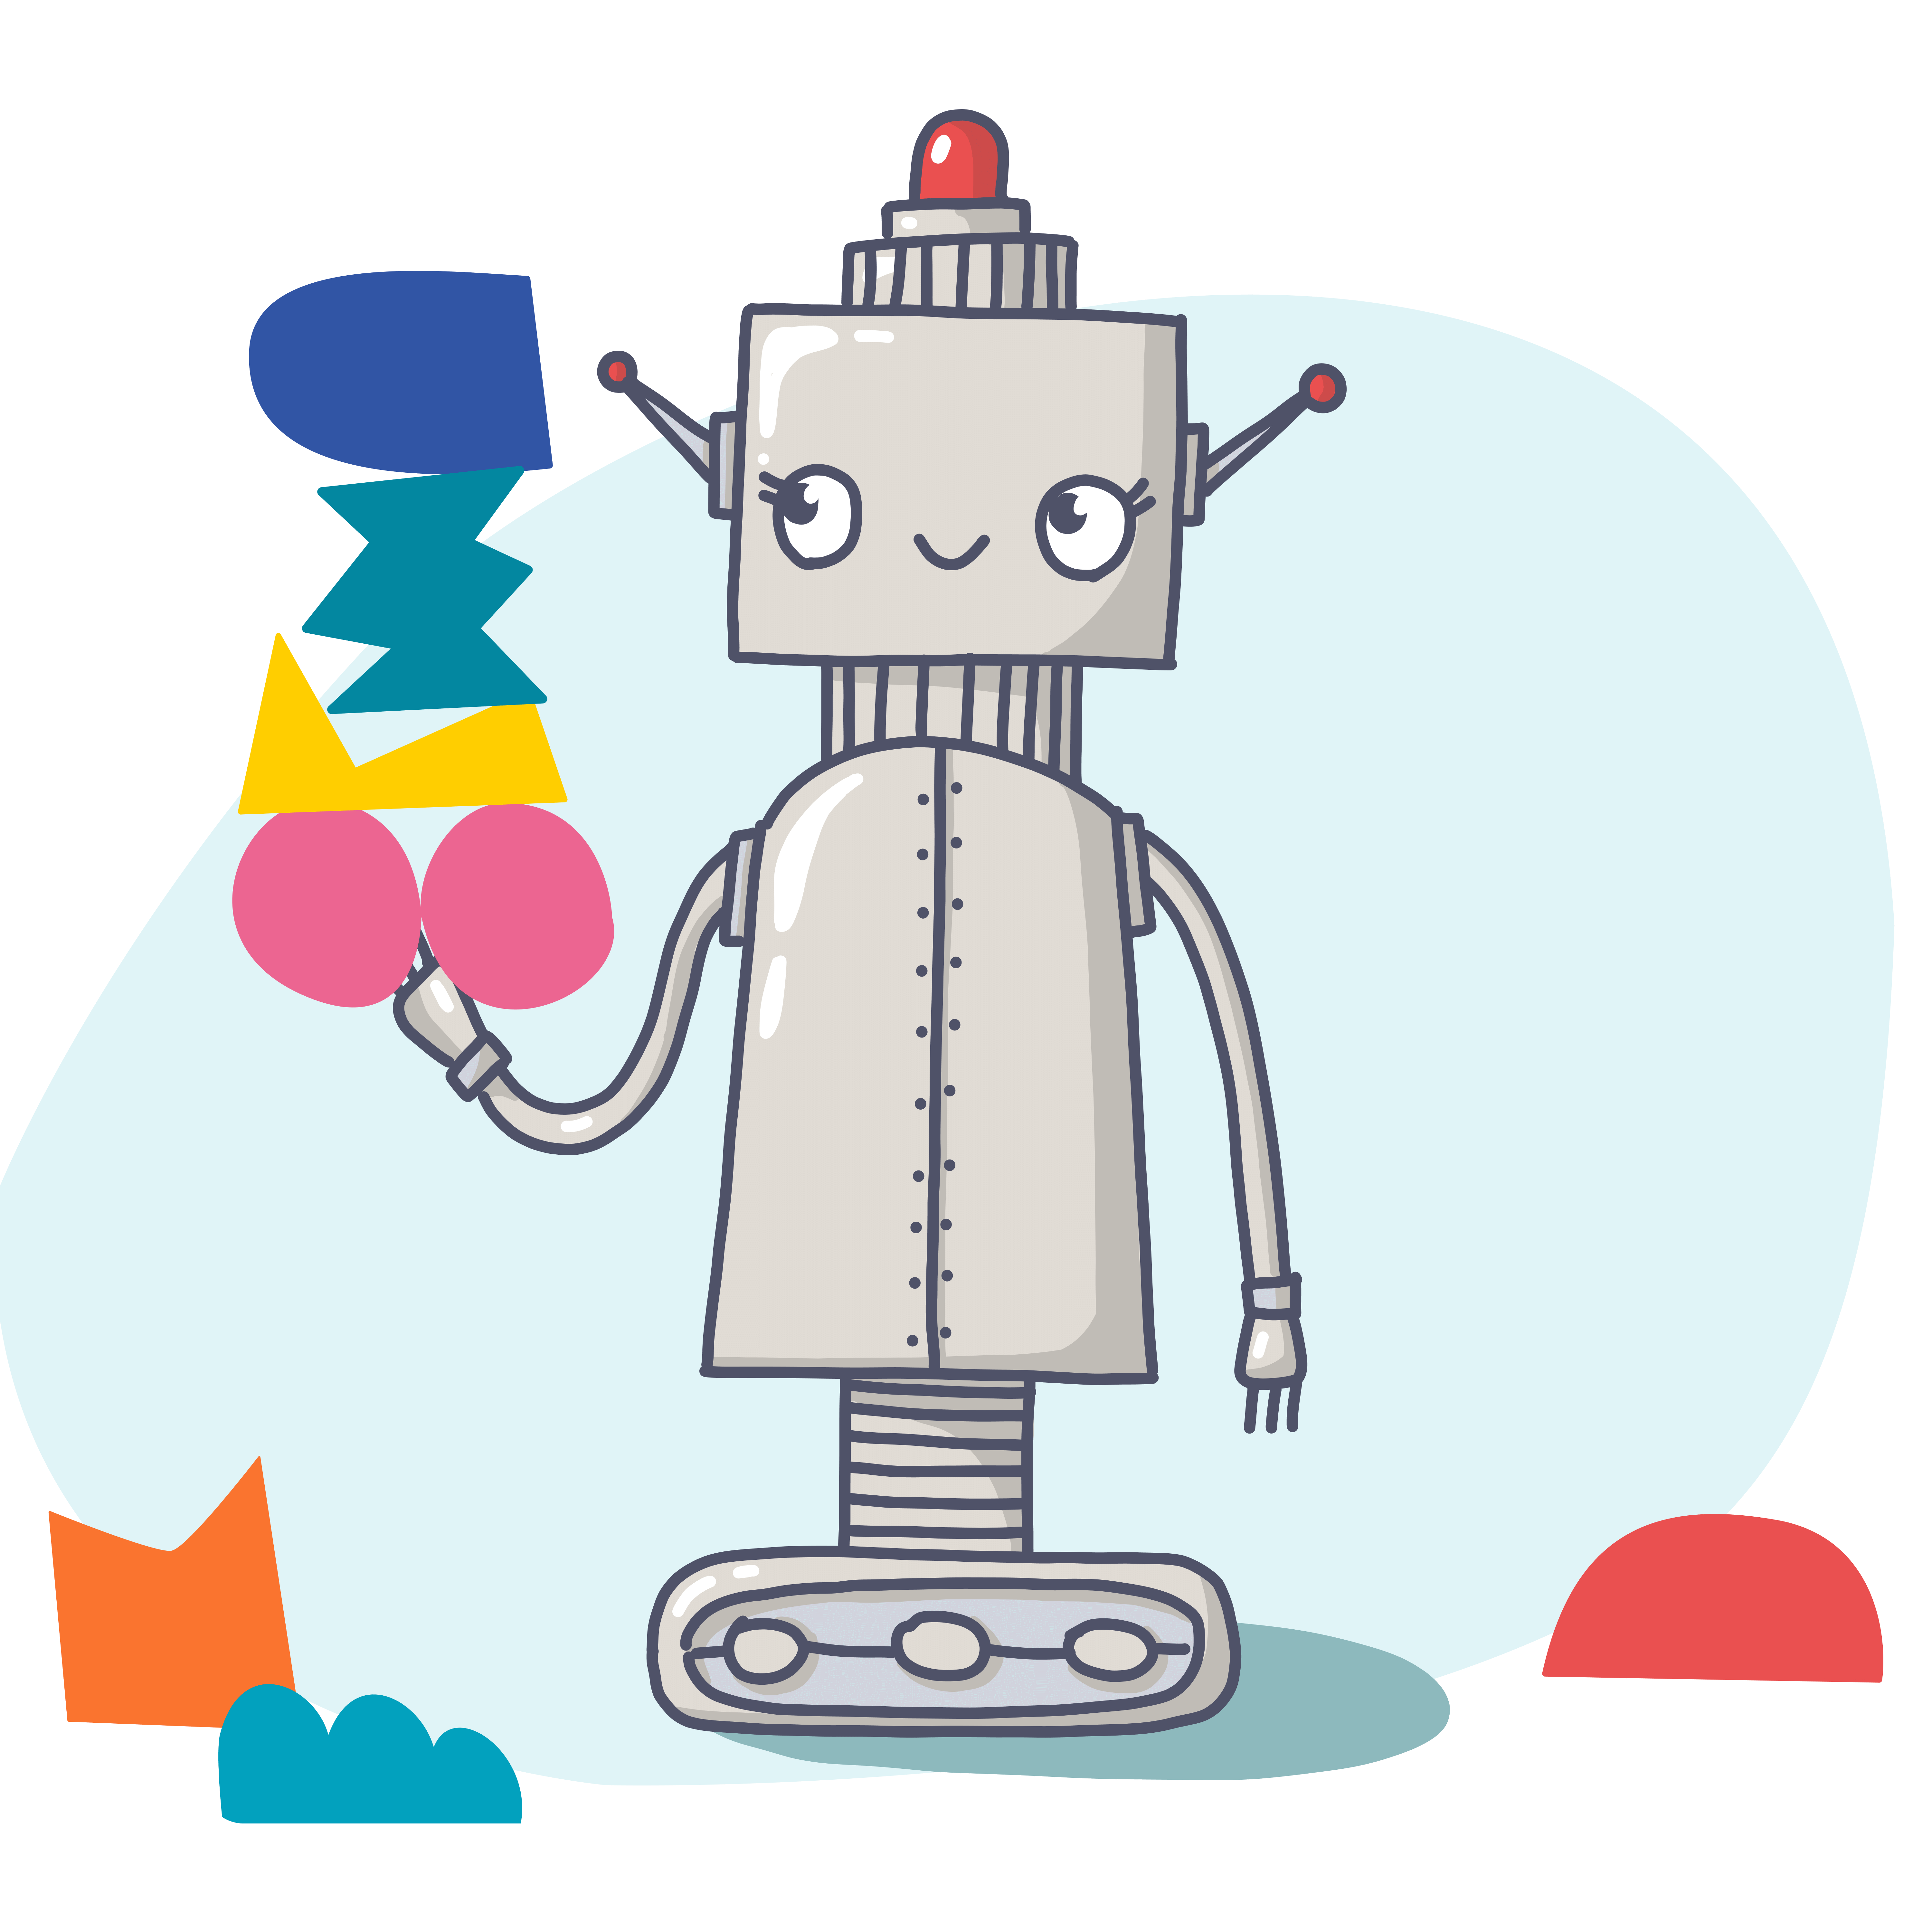 Header Ansatz, Illustration eines Roboters, der abstrakte bunte Formen in der Hand hält